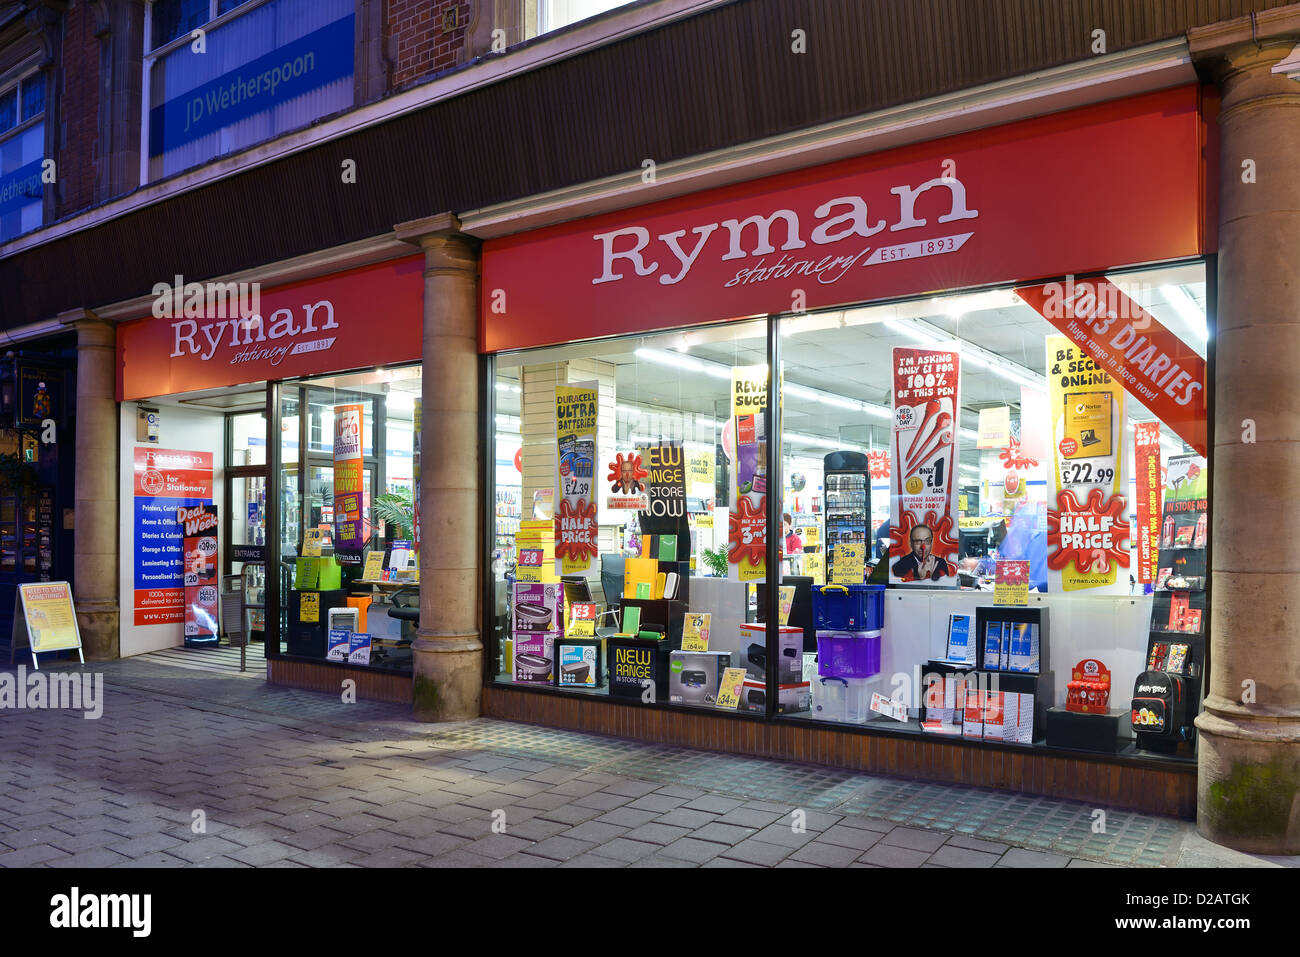 Ryman shop window Stock Photo